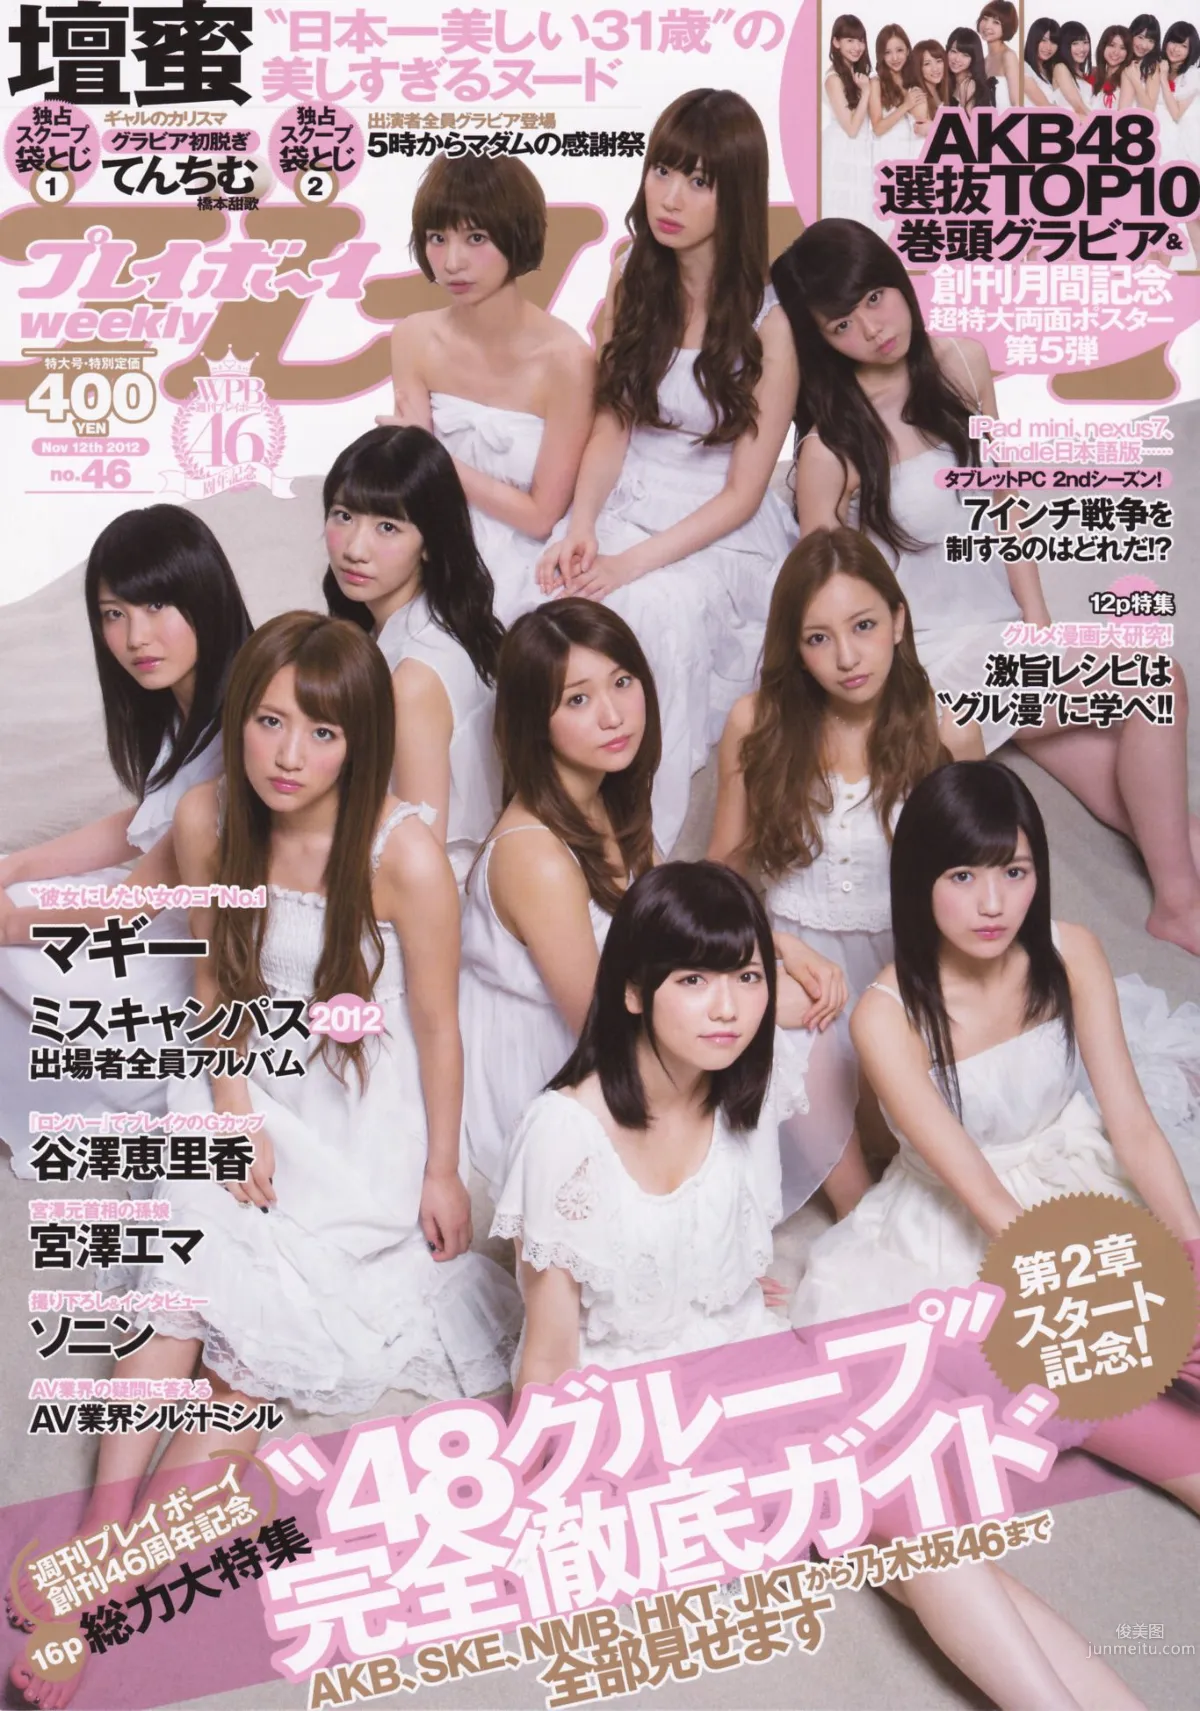 渡边麻友 柏木由纪 筱田麻里子 [Weekly Playboy] 2012年No.46 写真杂志1